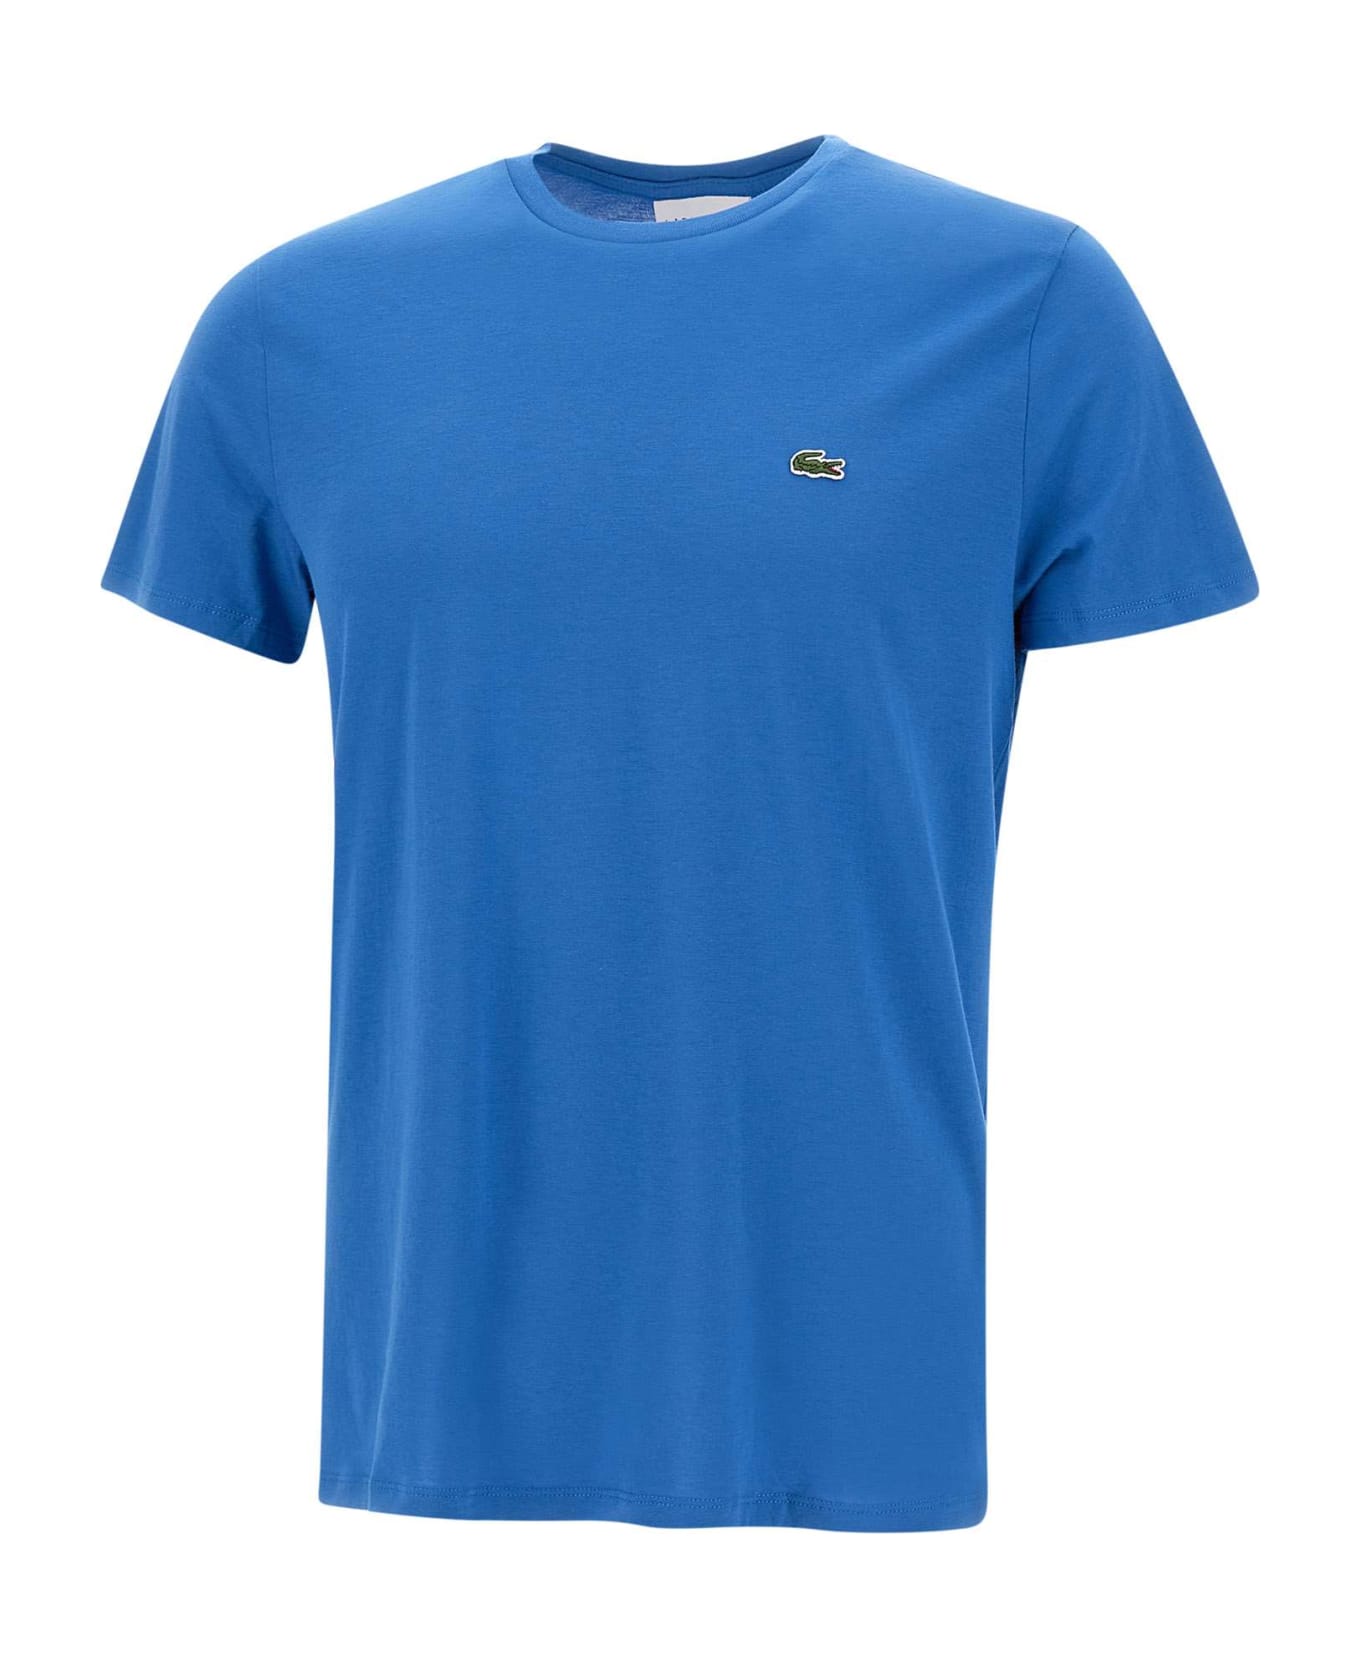 Lacoste Cotton T-shirt - Bluette